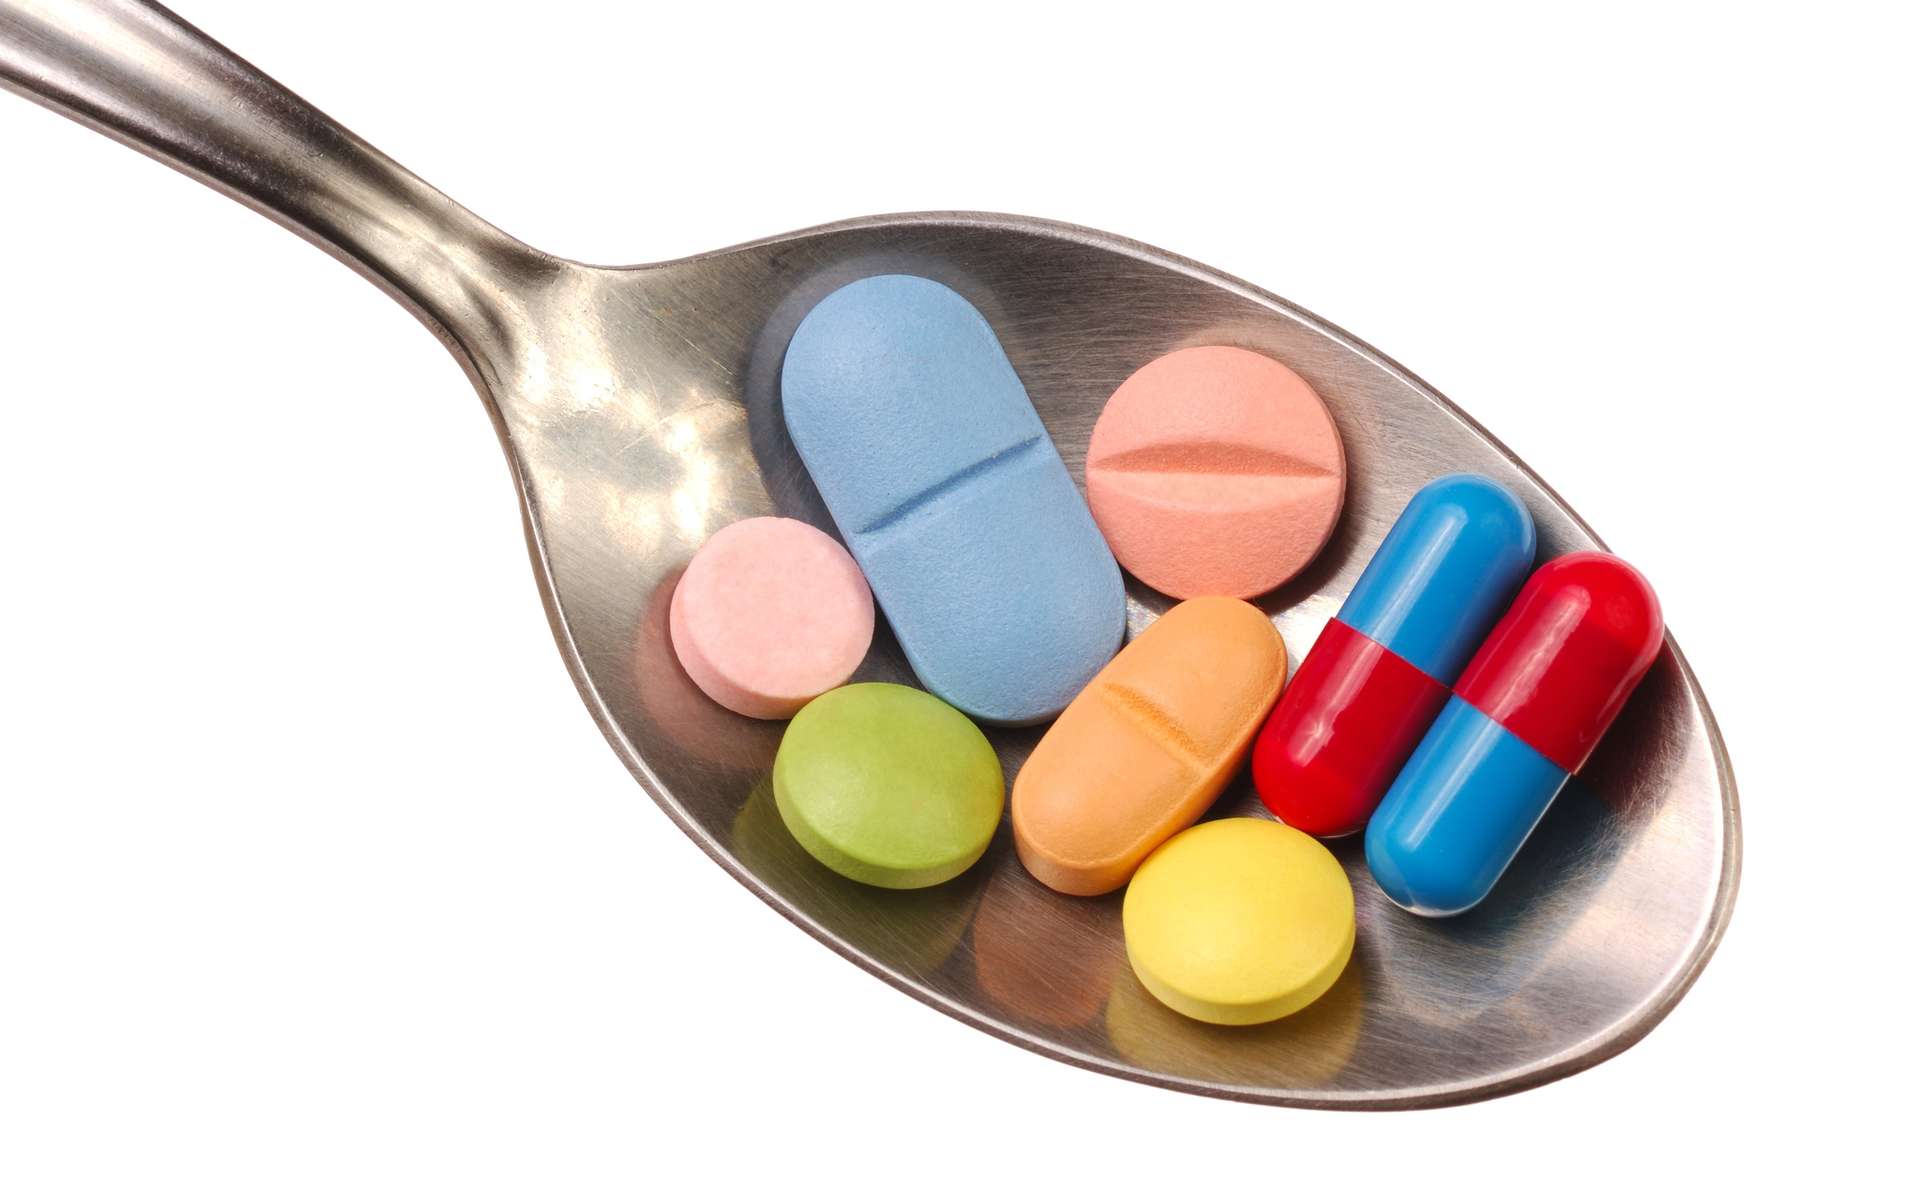 Certains médicaments, comme l’aspirine et des anti-inflammatoires non stéroïdiens (AINS), sont ototoxiques à trop fortes doses. © Phovoir